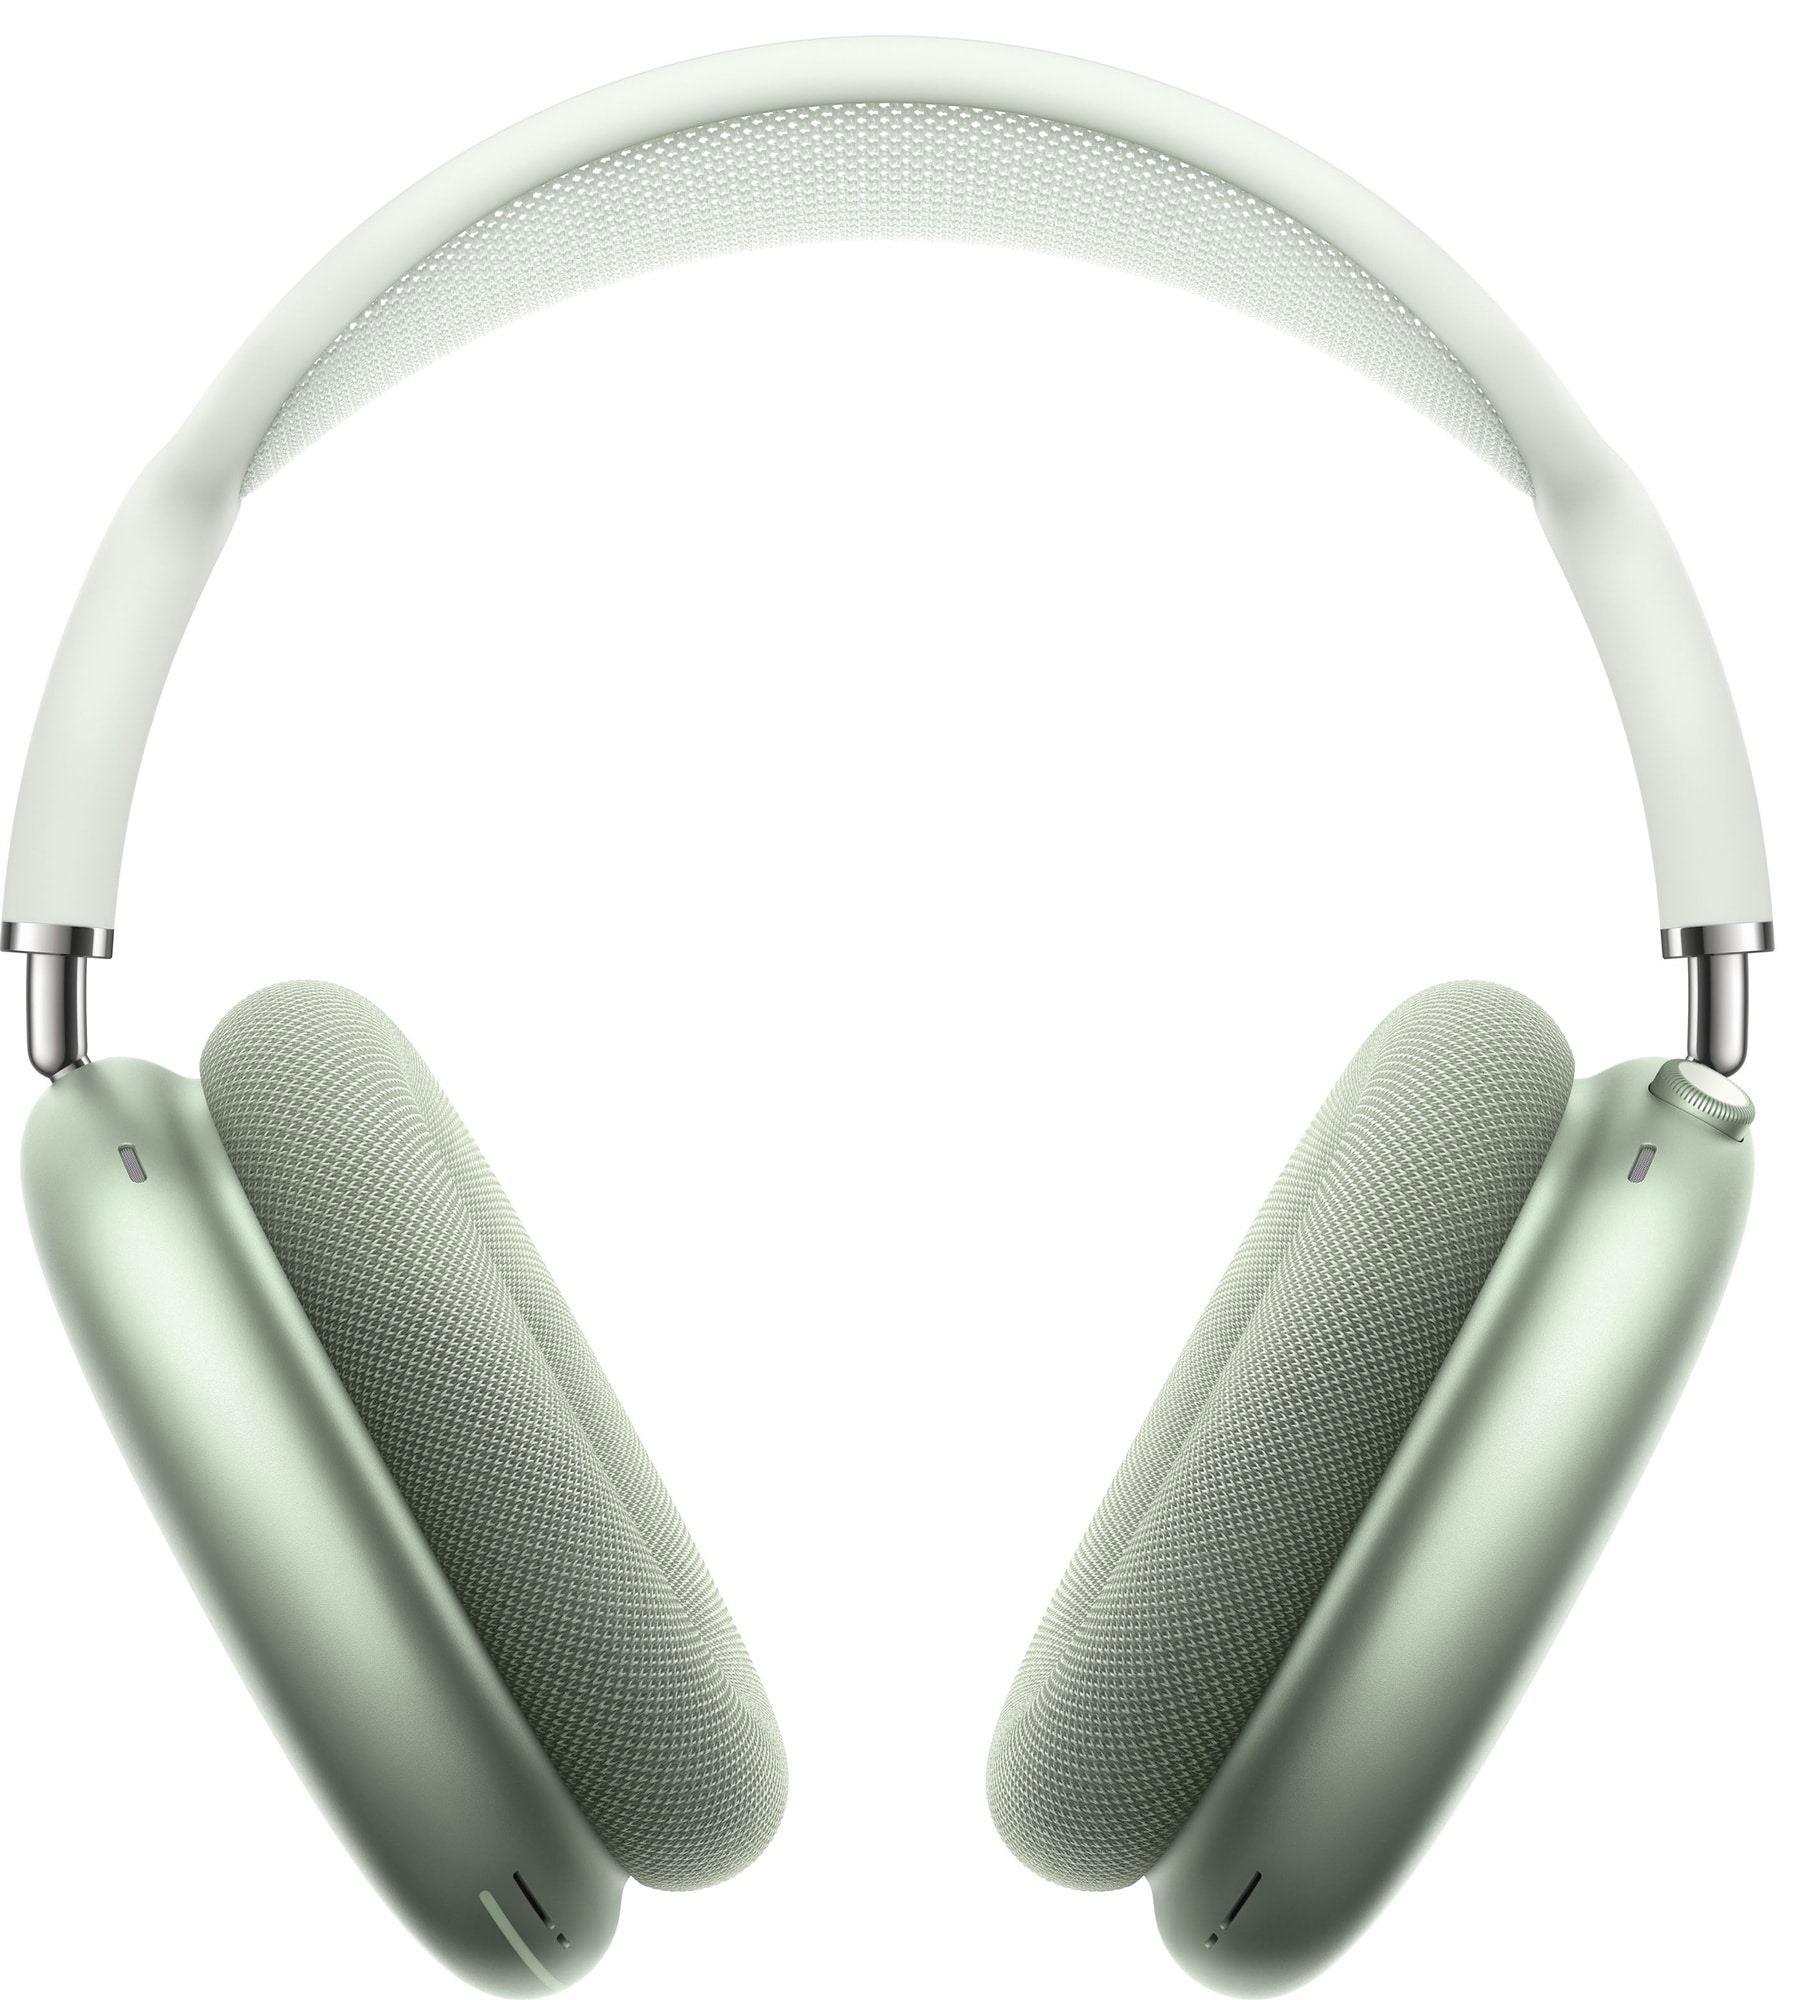 Apple AirPods Max trådløse around-ear høretelefoner (grønne) | Elgiganten